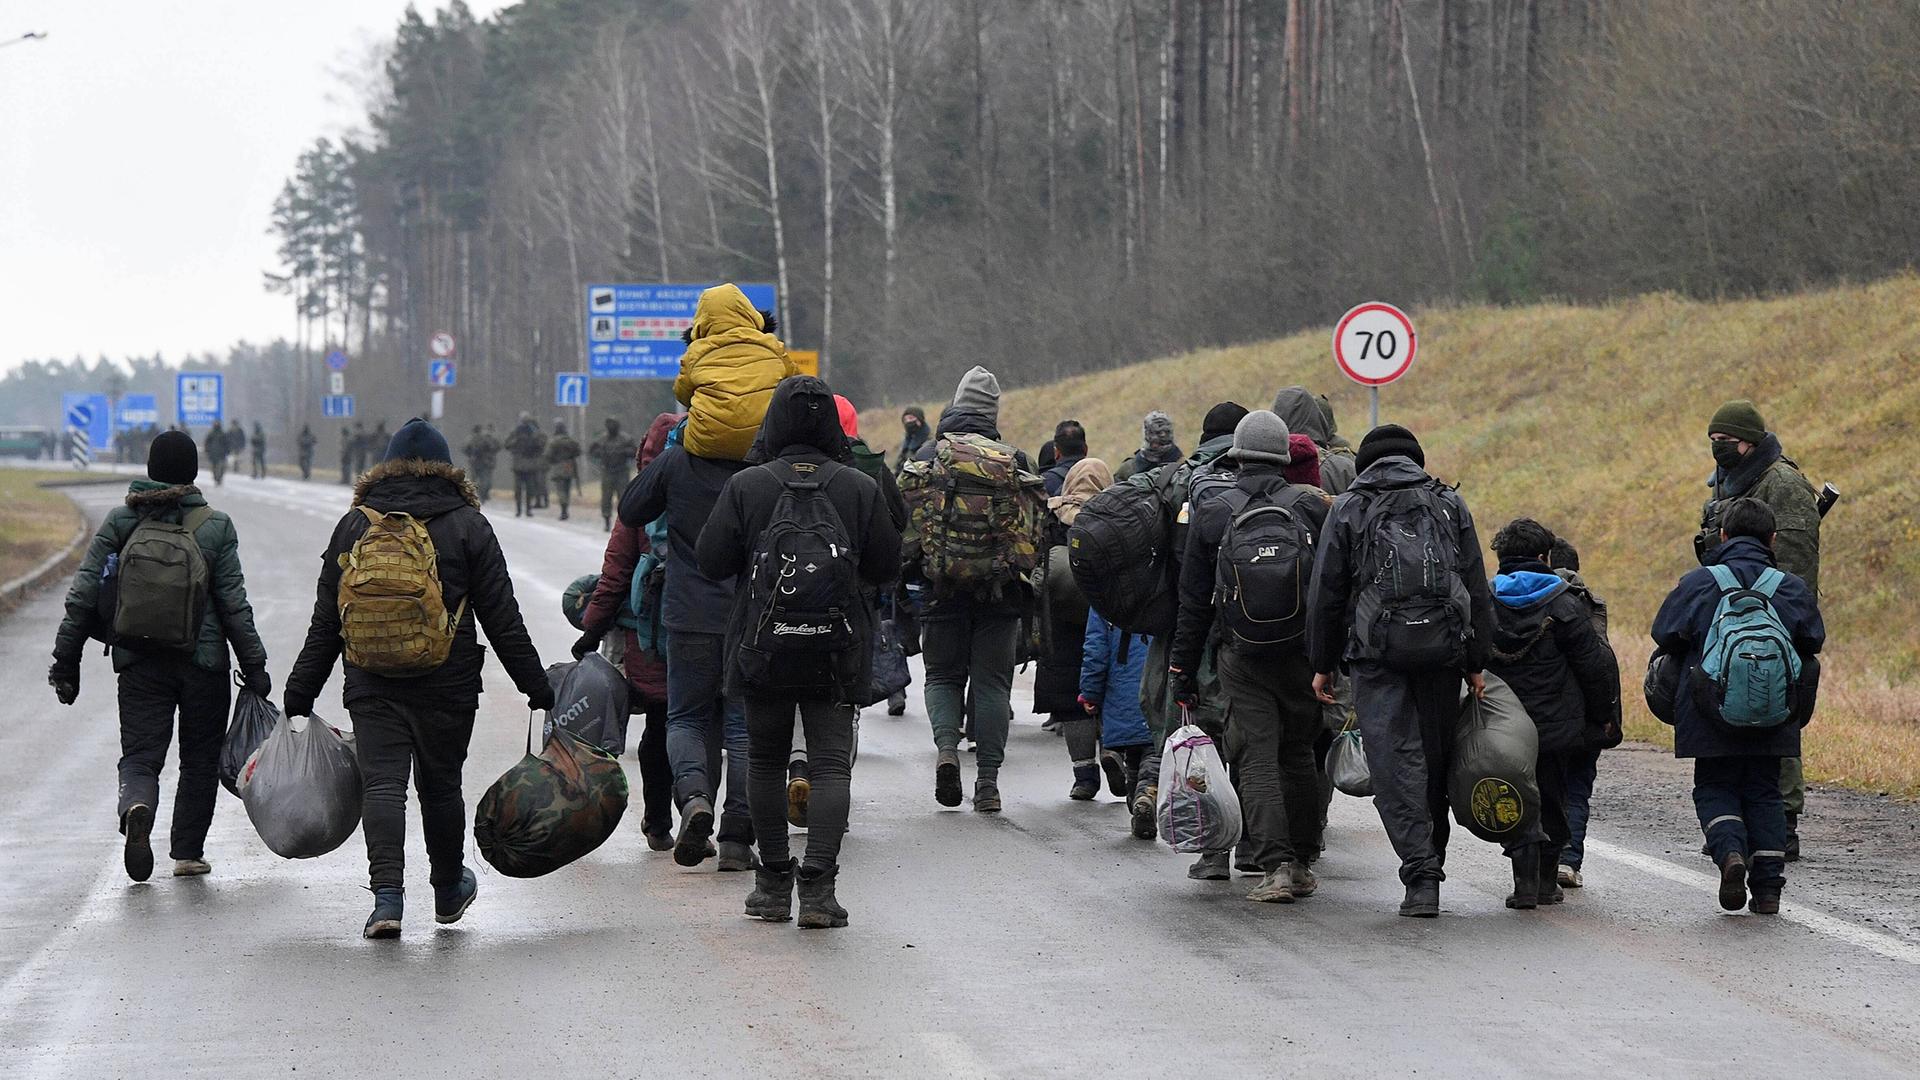 Das Bild zeigt die Gruppe von schwerbepackten Migranten auf einer Straße von hinten. Sie tragen dunkle Kleidung, die Strasse ist feucht. 